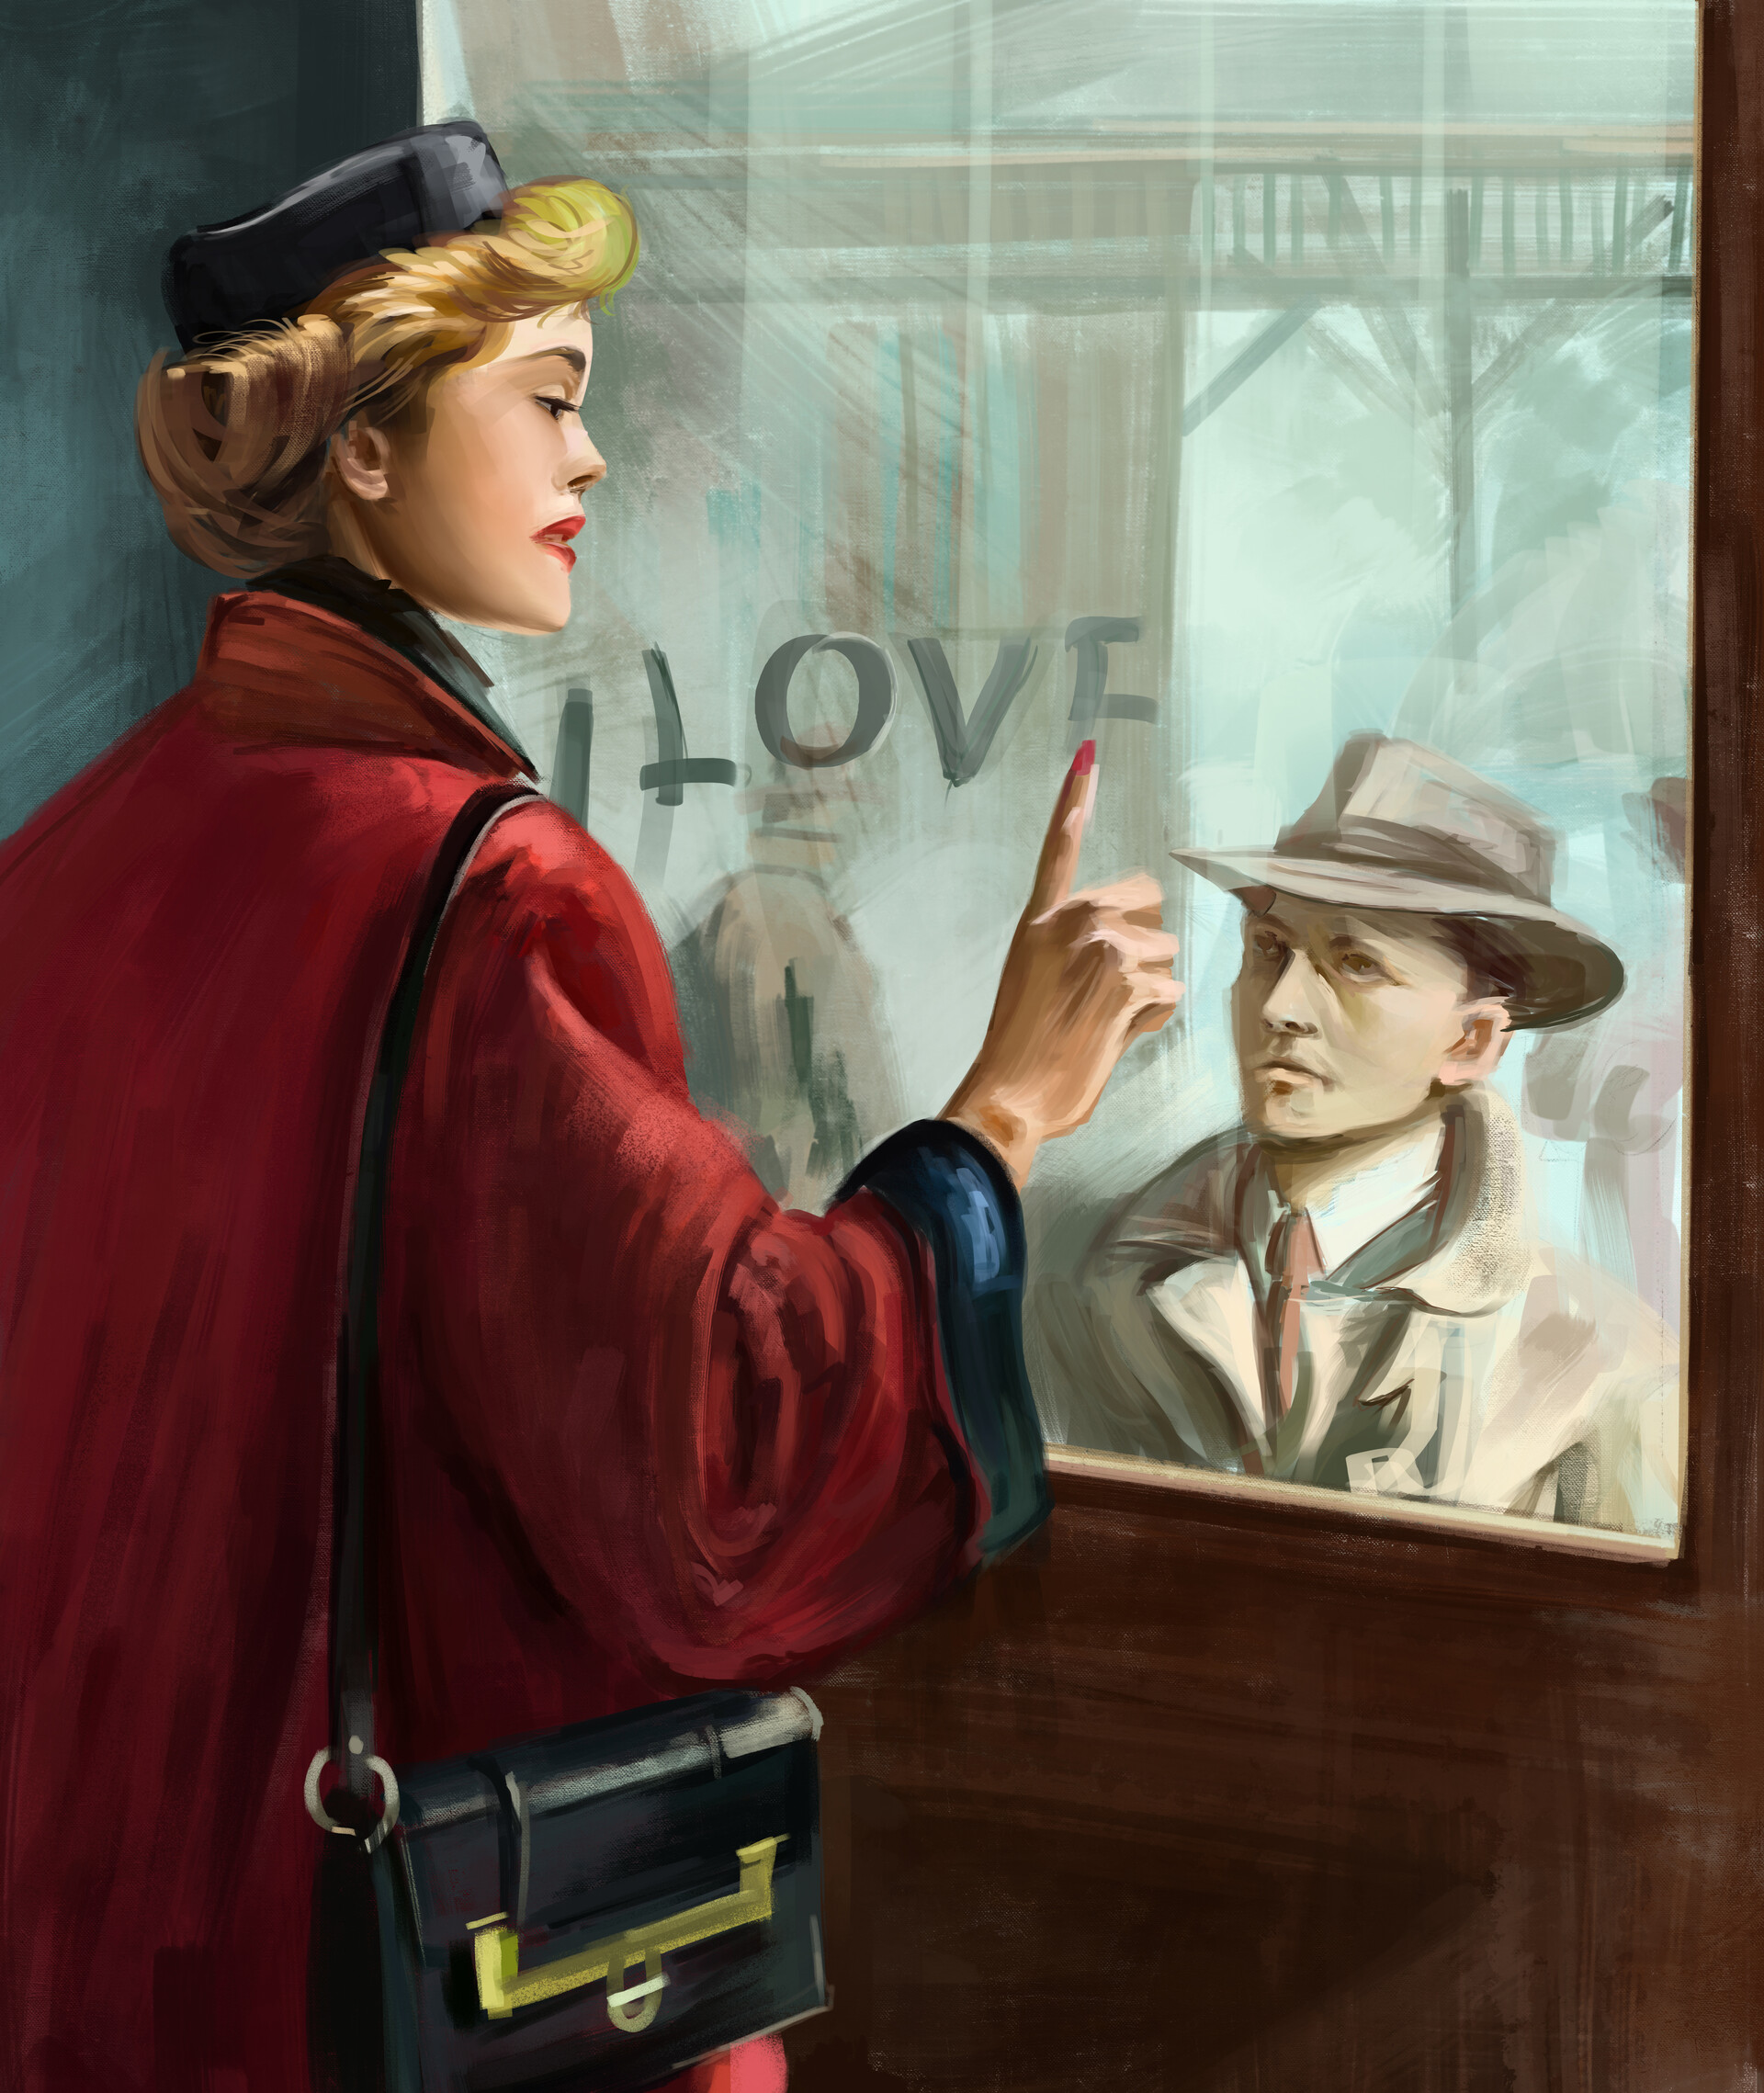 Фото Девушка держит руку на стекле окна, за которым стоит мужчина, (Love / любовь), американский художник-иллюстратор Артур Сарнофф / Arthur Saron Sarnoff